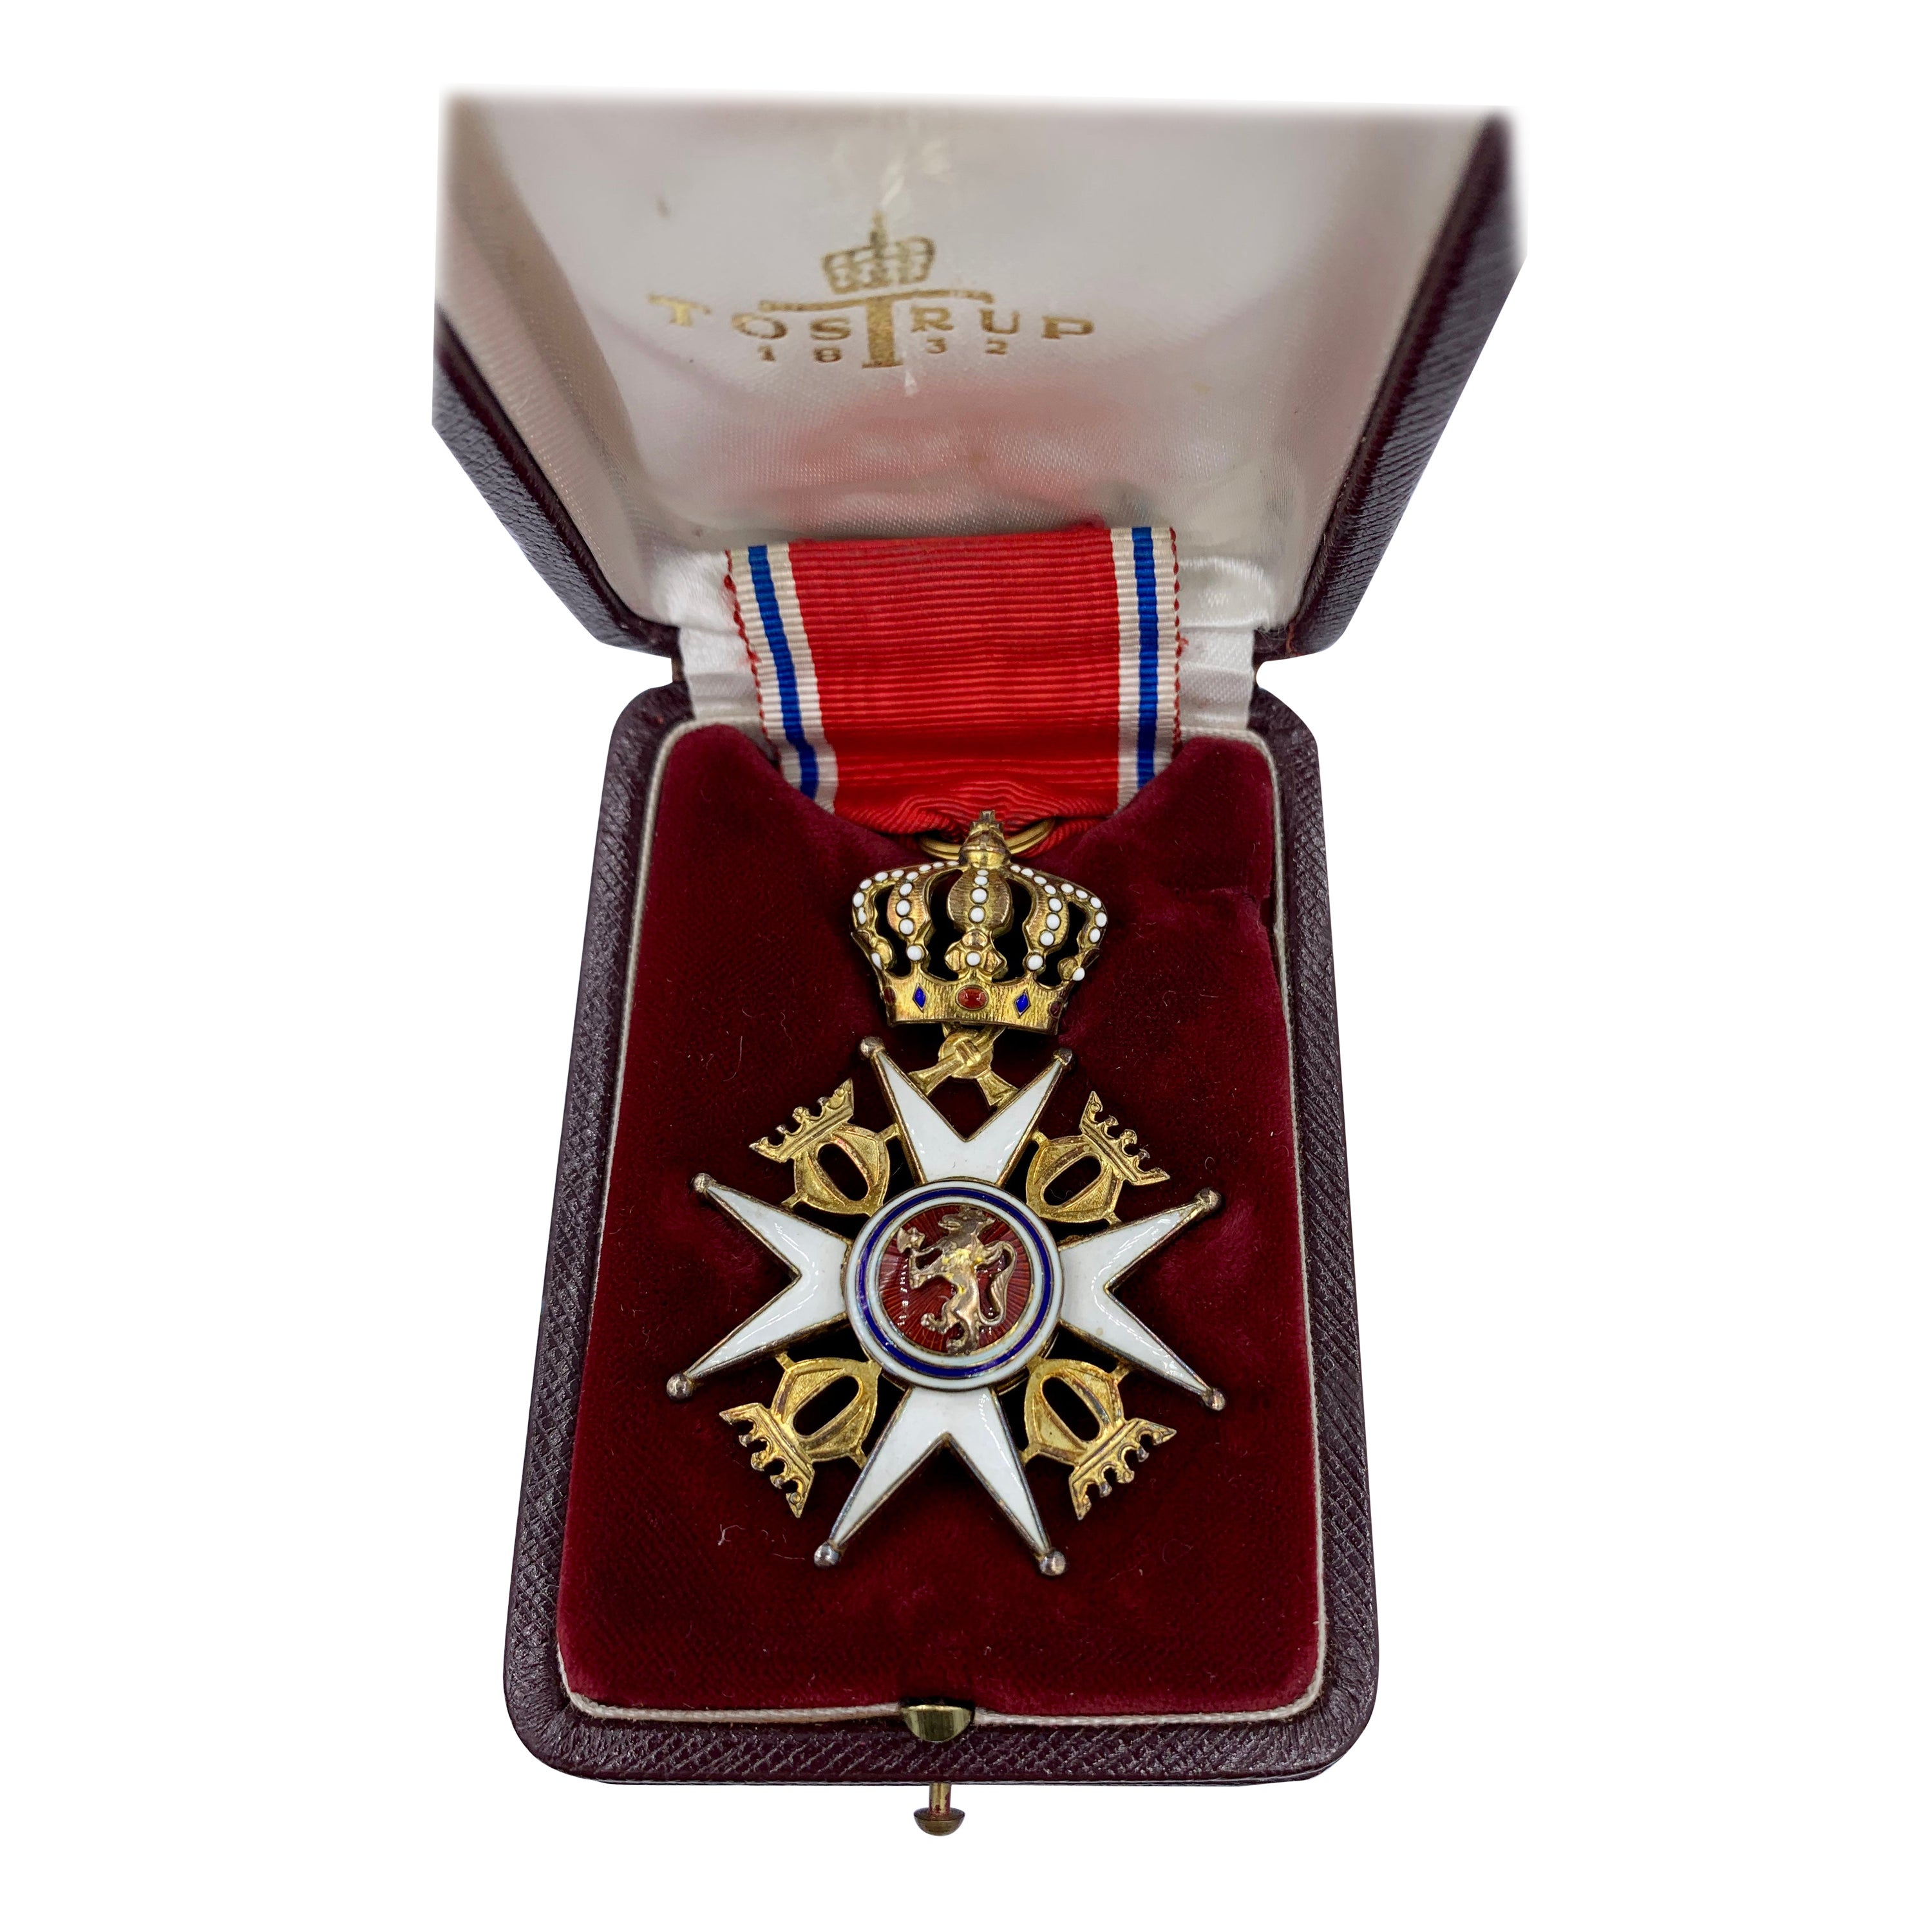 Royal Norwegian Order of Saint Olav Presented to Oscar Winner Celeste Holm For Sale